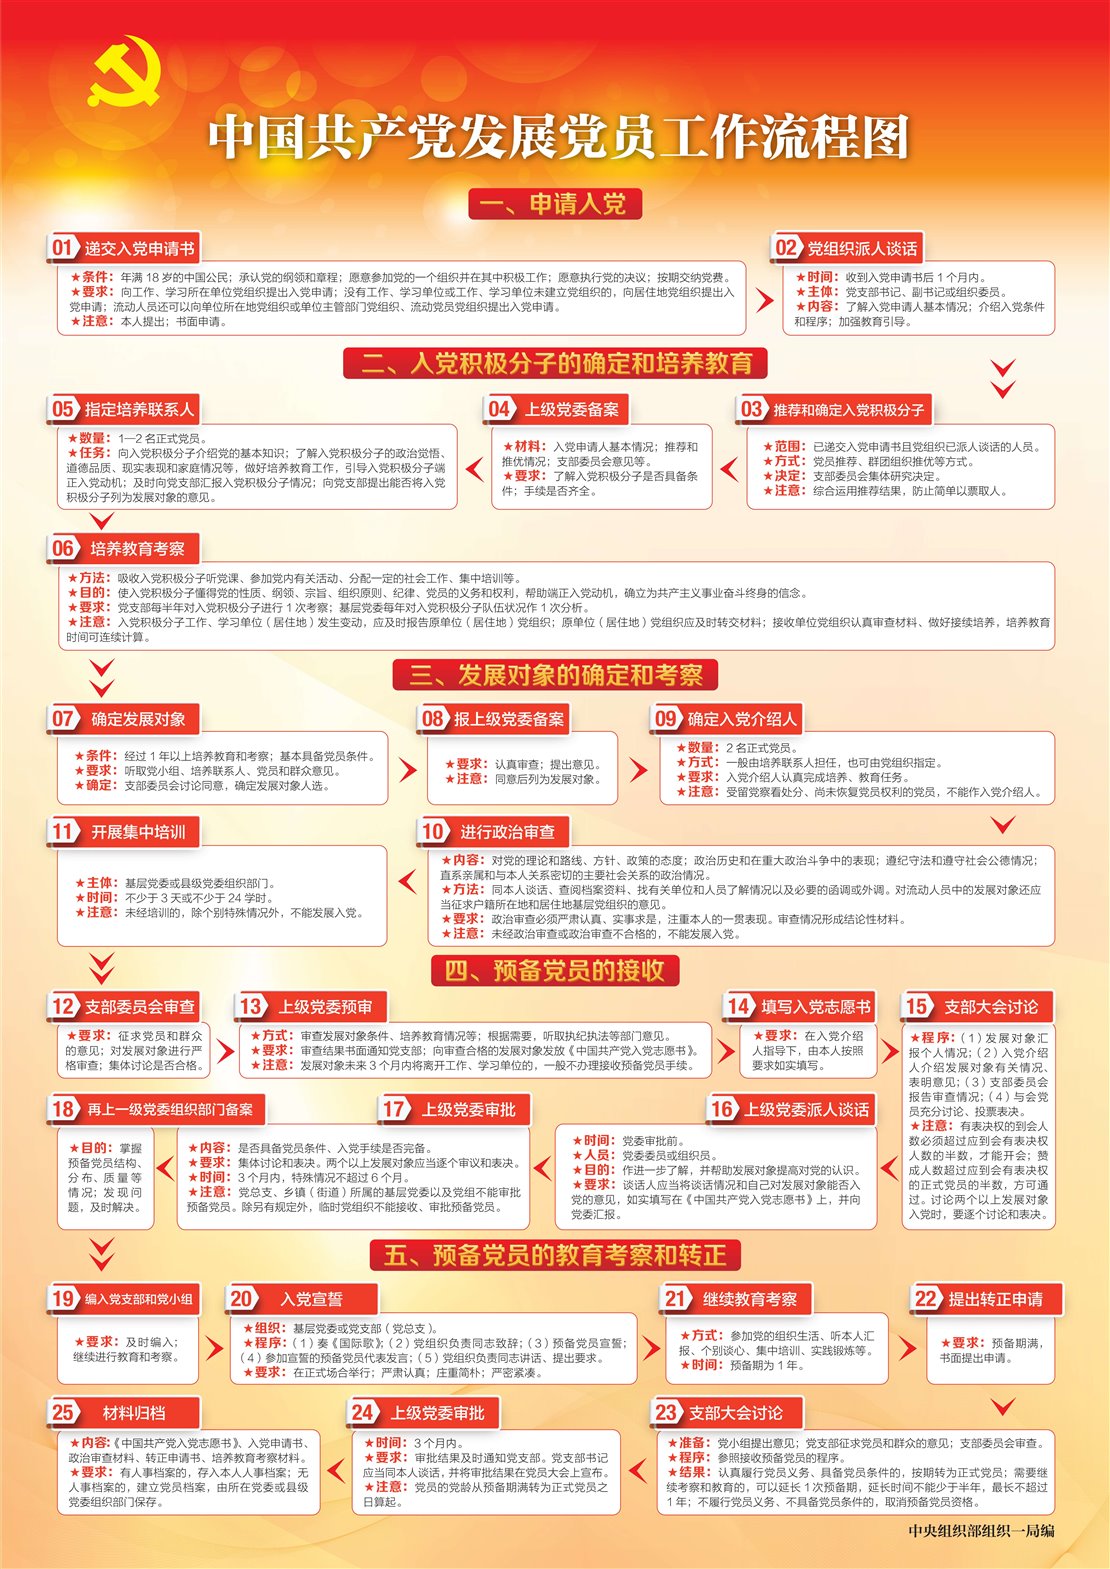 中国共产党发展党员工作流程图_00(1)